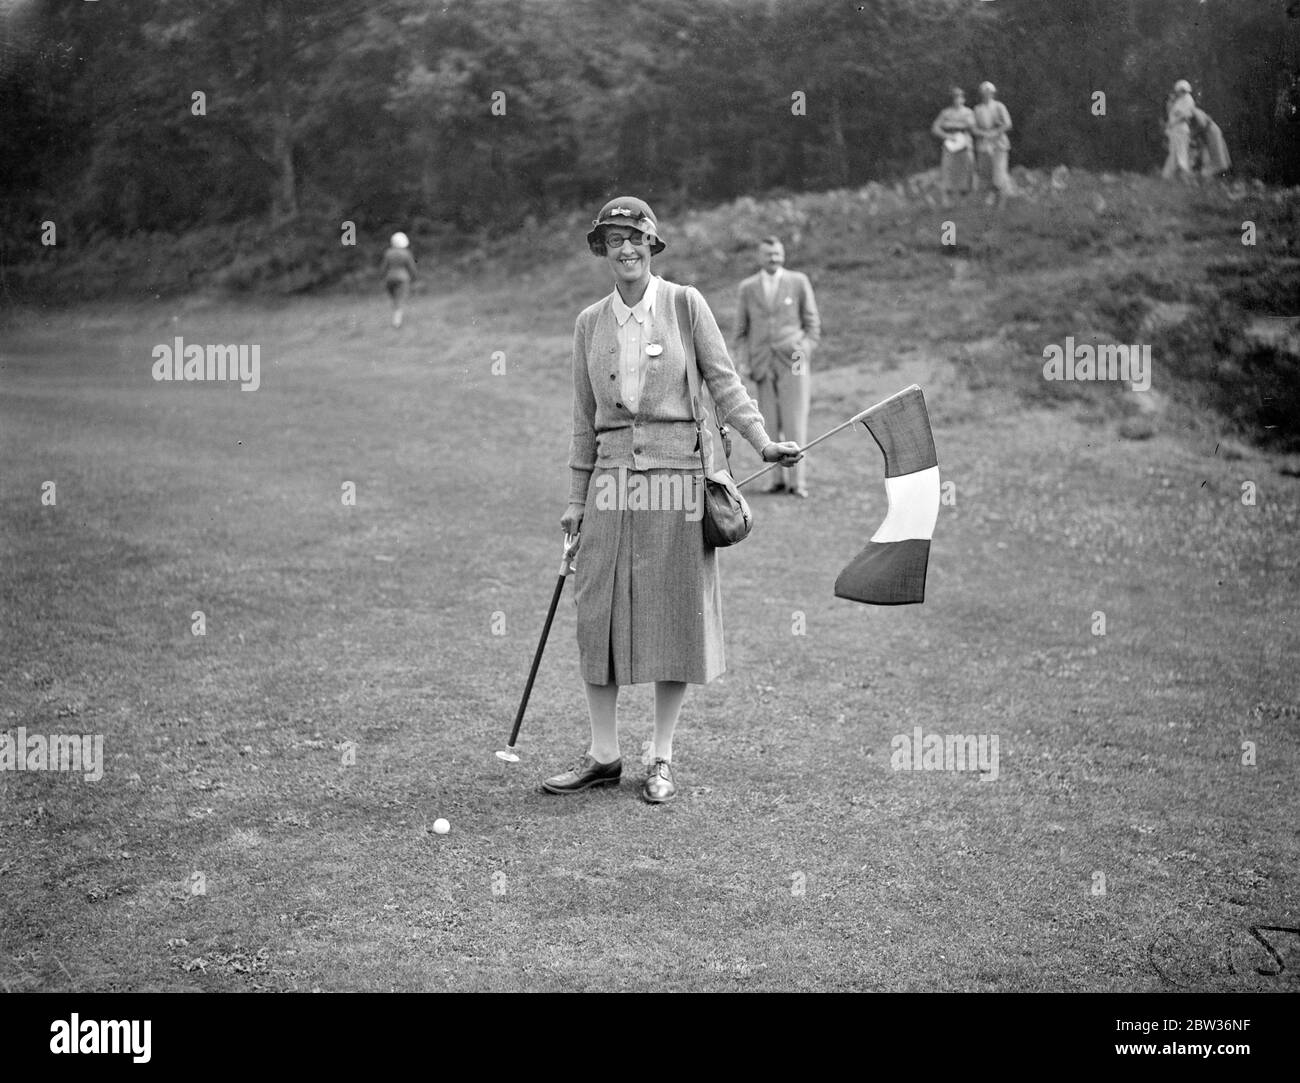 Le donne che praticano il golf in Gran Bretagna e Francia si incontrano in una partita internazionale . La partita internazionale tra le donne golfisti della Gran Bretagna e della Francia si è svolta sul campo di St George' s Hill a Weybridge, Surrey . Foto spettacoli ; Lady Alness tenendo la bandiera francese sopra la palla come la partita si è aperta . 29 giugno 1933 Foto Stock